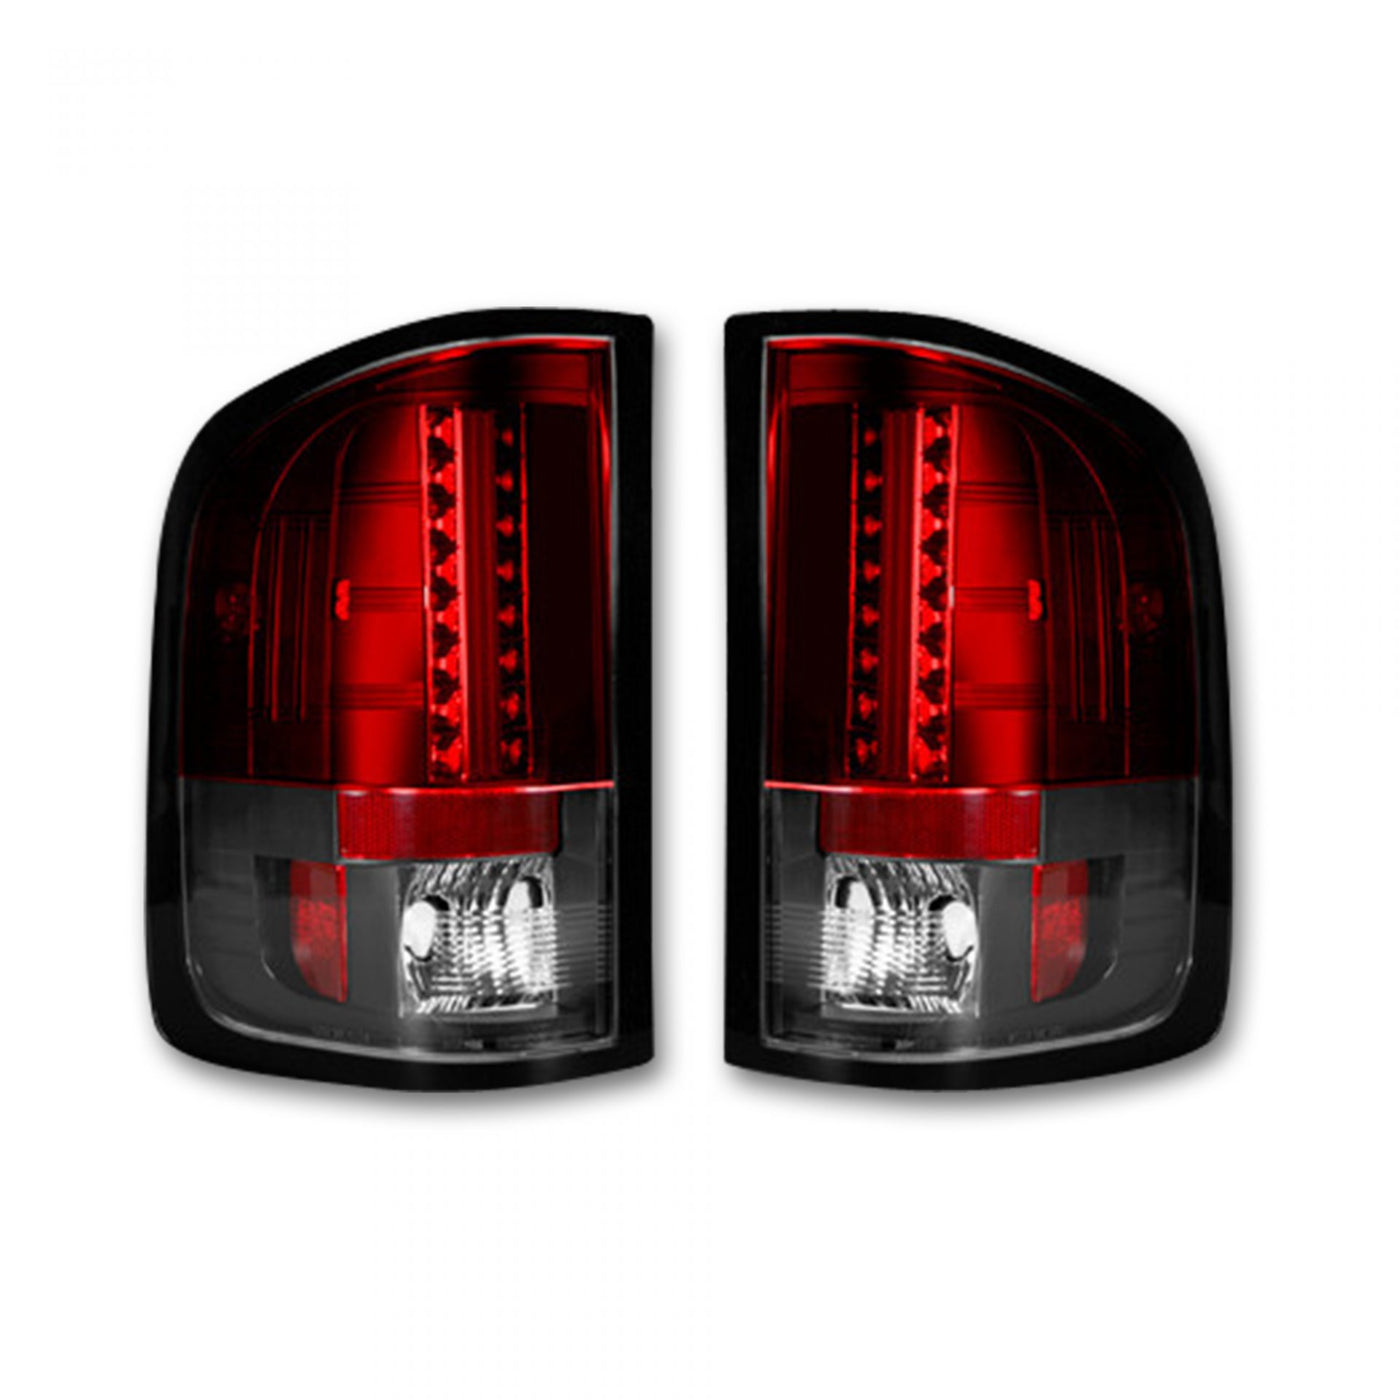 GMC Tail Lights, Sierra Tail Lights, Sierra 07-13 Tail Lights, Red Tail Lights, Recon Tail Lights, GMC Tail Lights